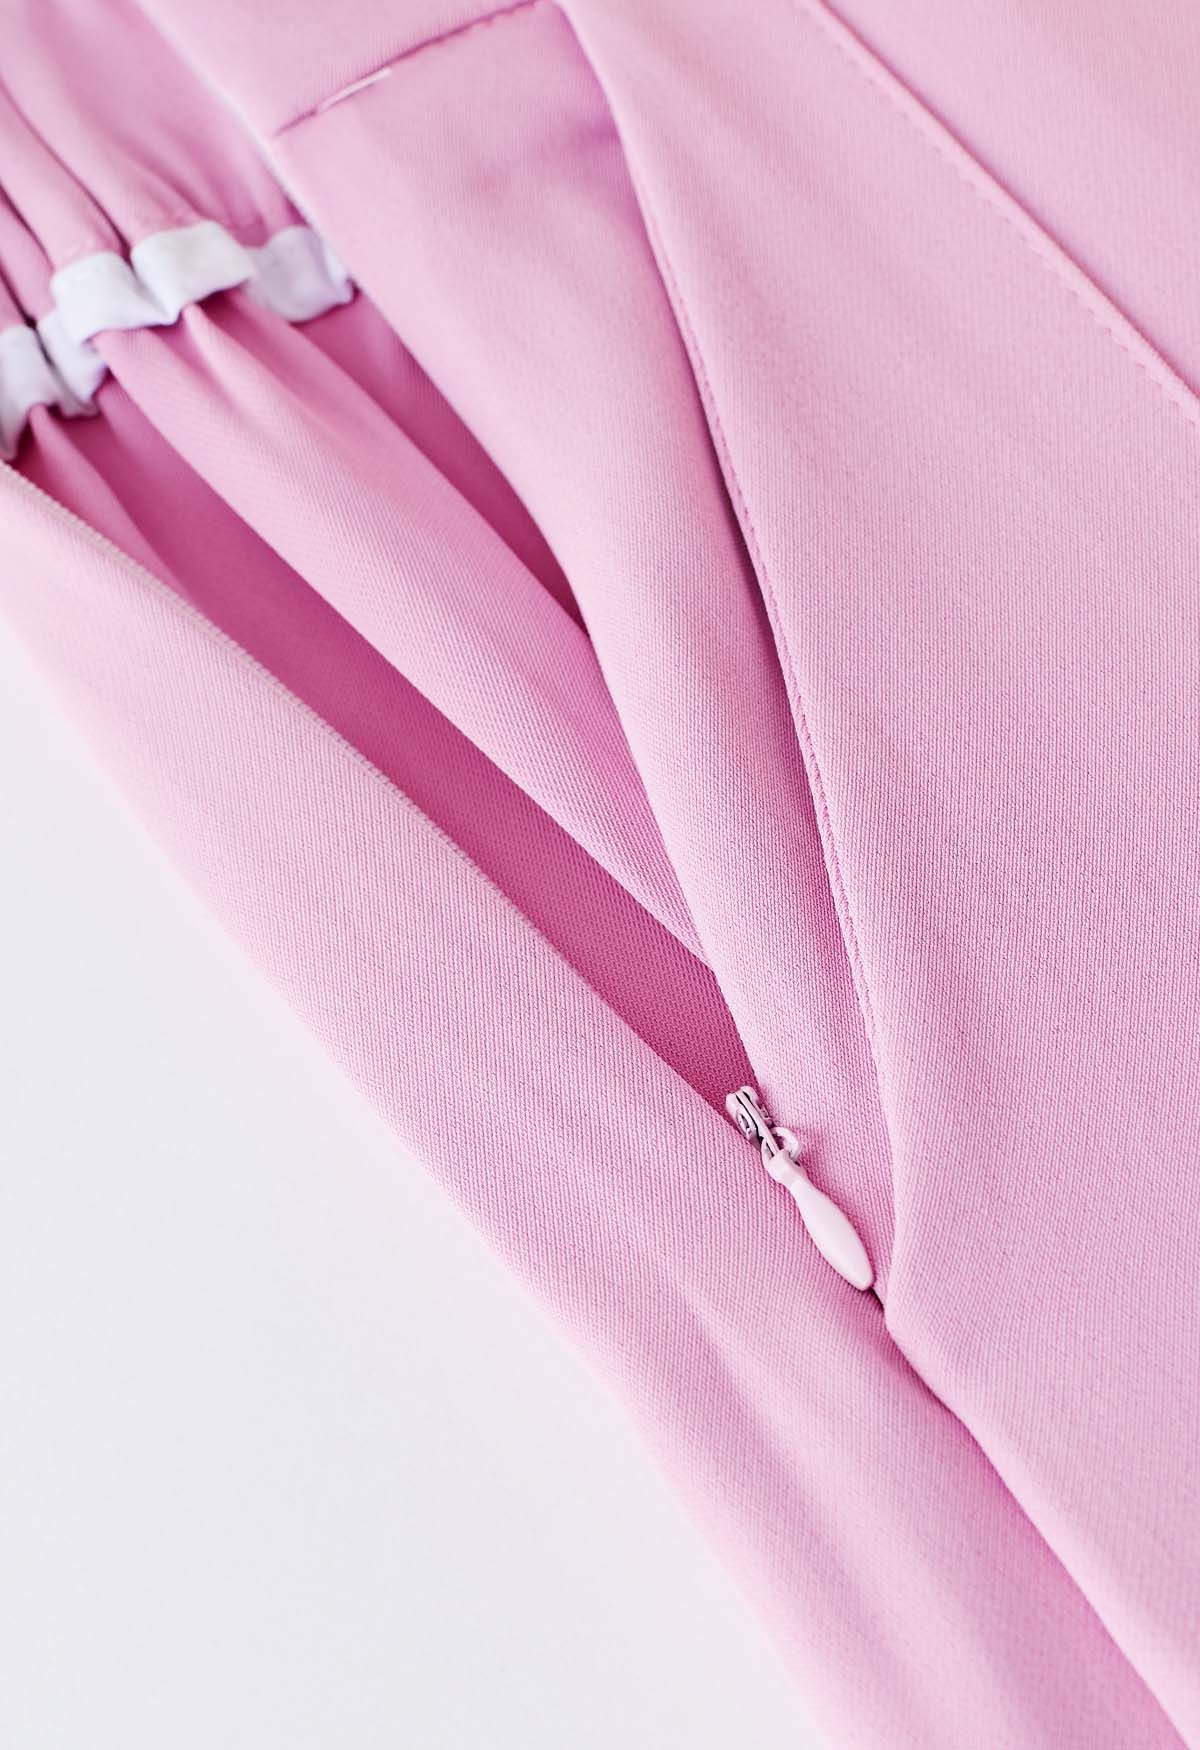 Pantalon large asymétrique en mousseline plissée à enfiler en rose vif